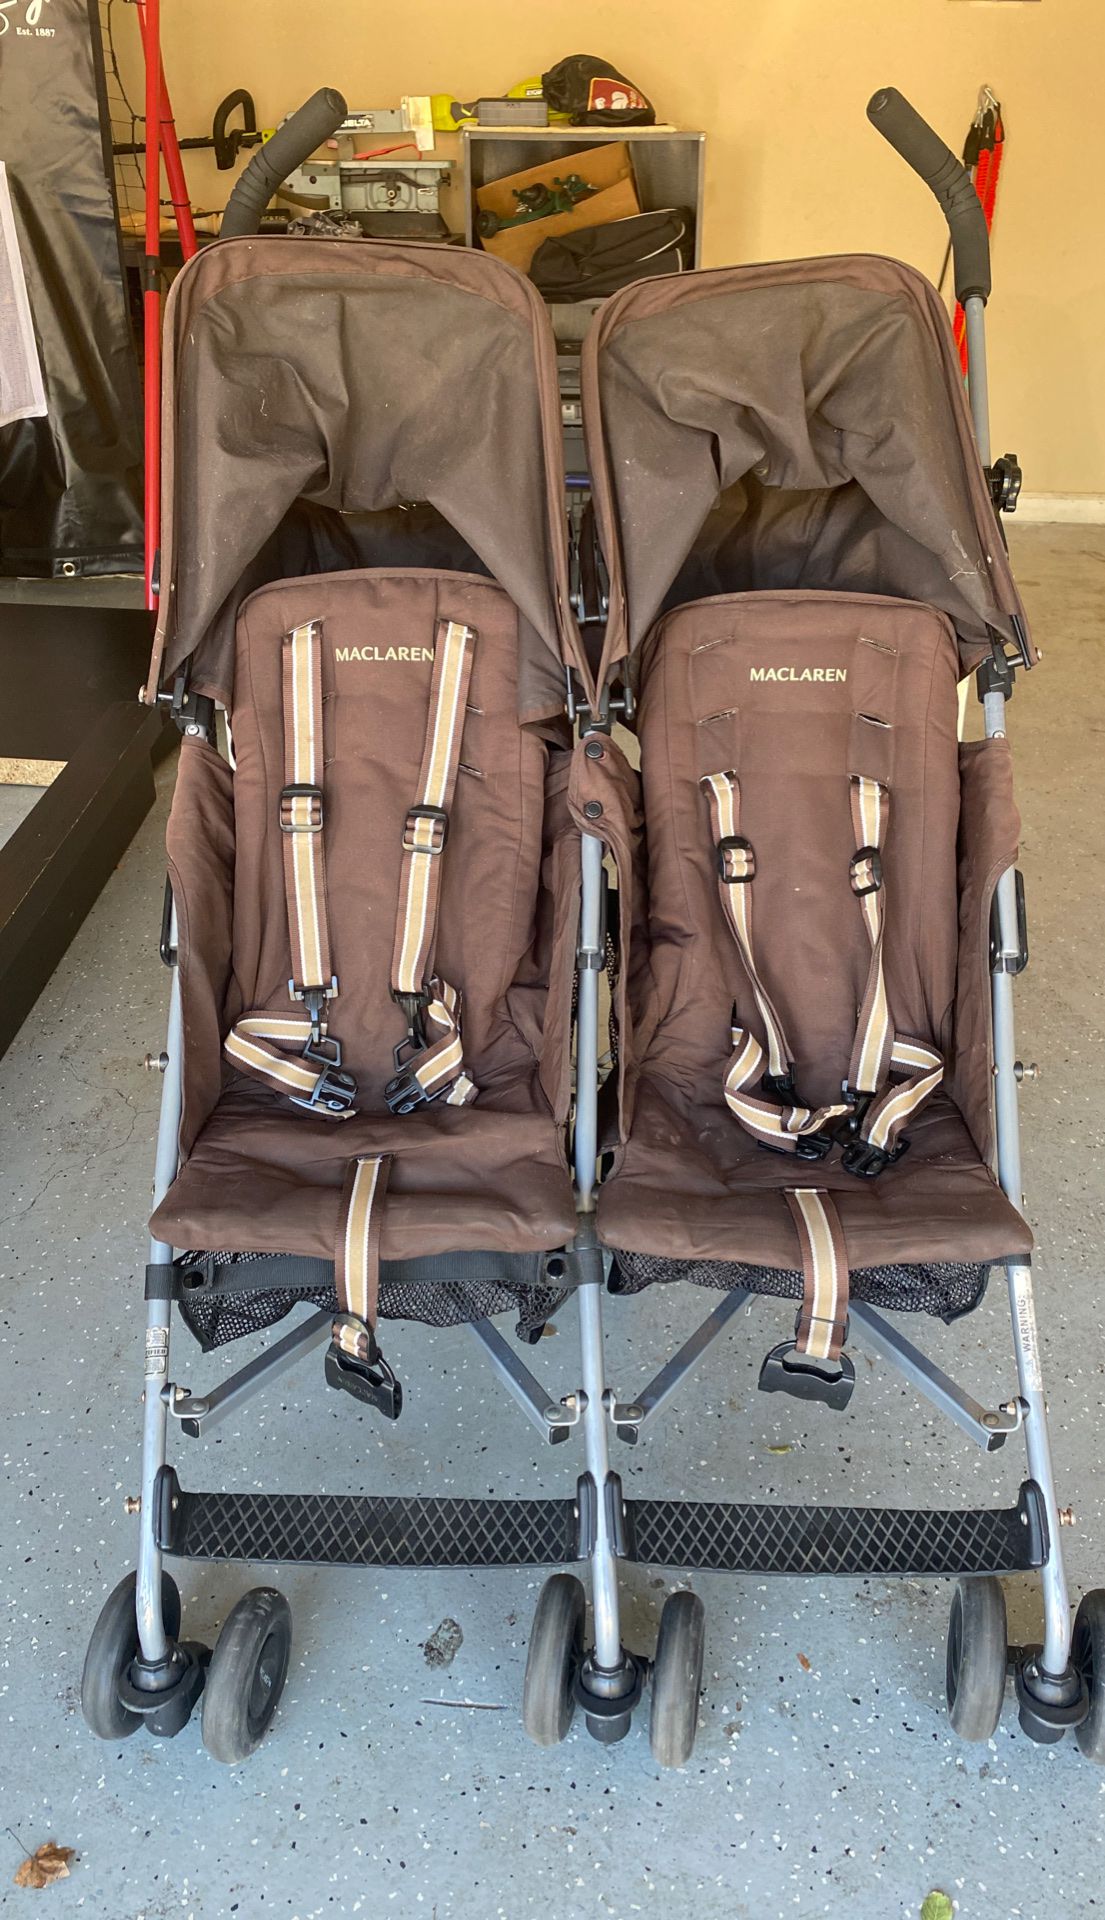 Maclaren double stroller